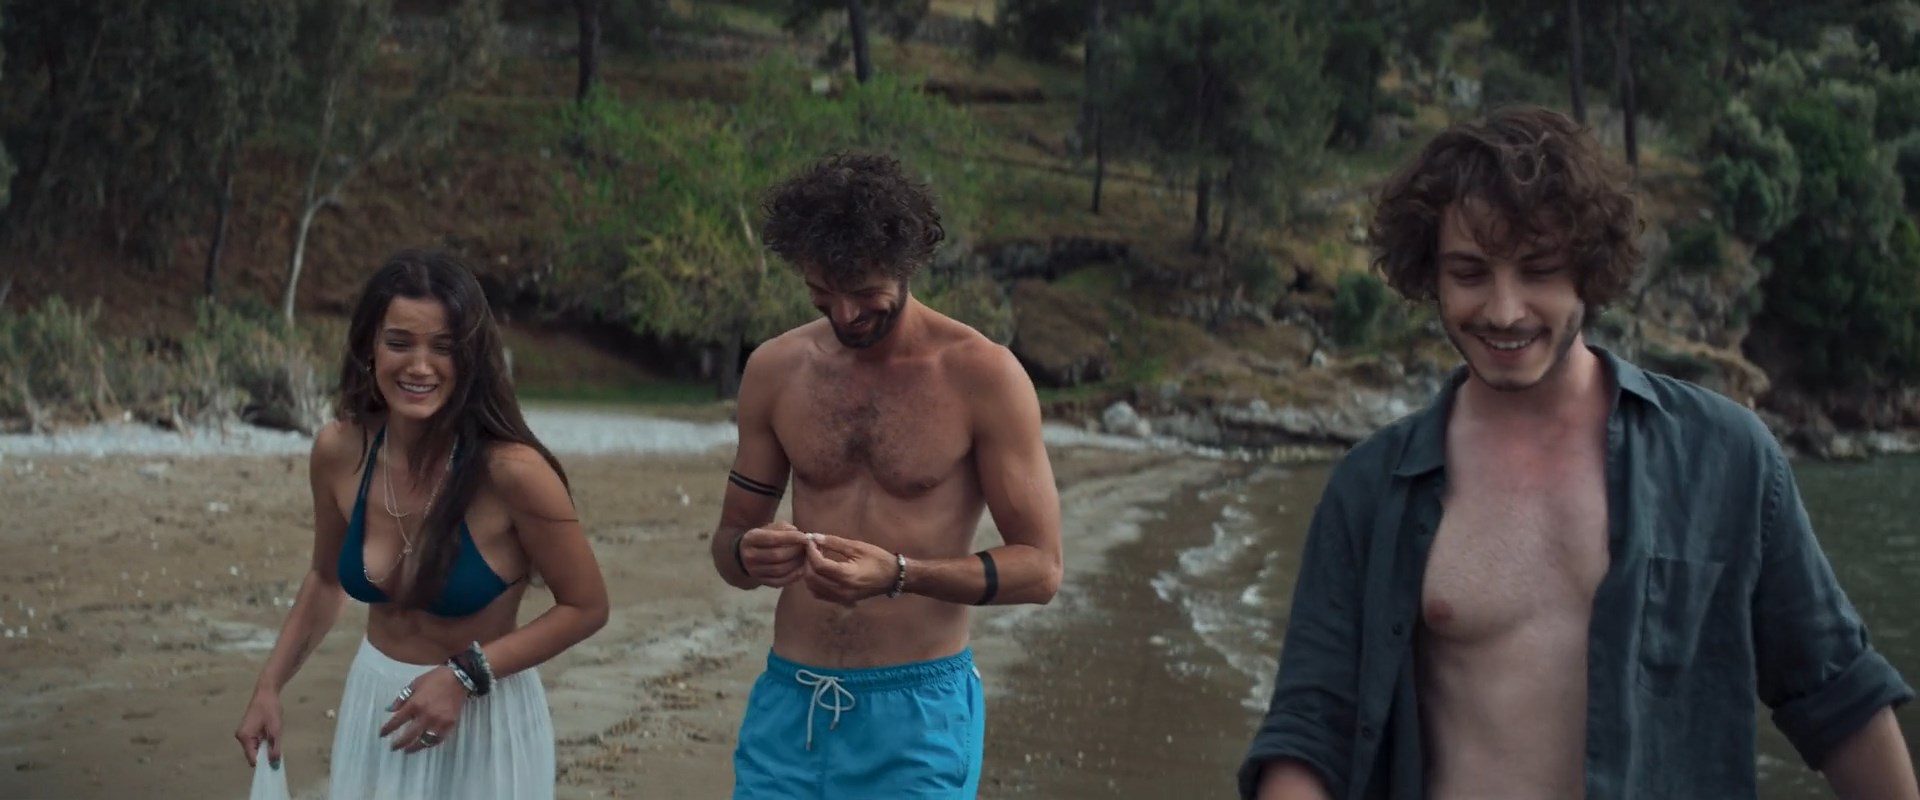 Pinar Deniz Underwear film in Love 101 